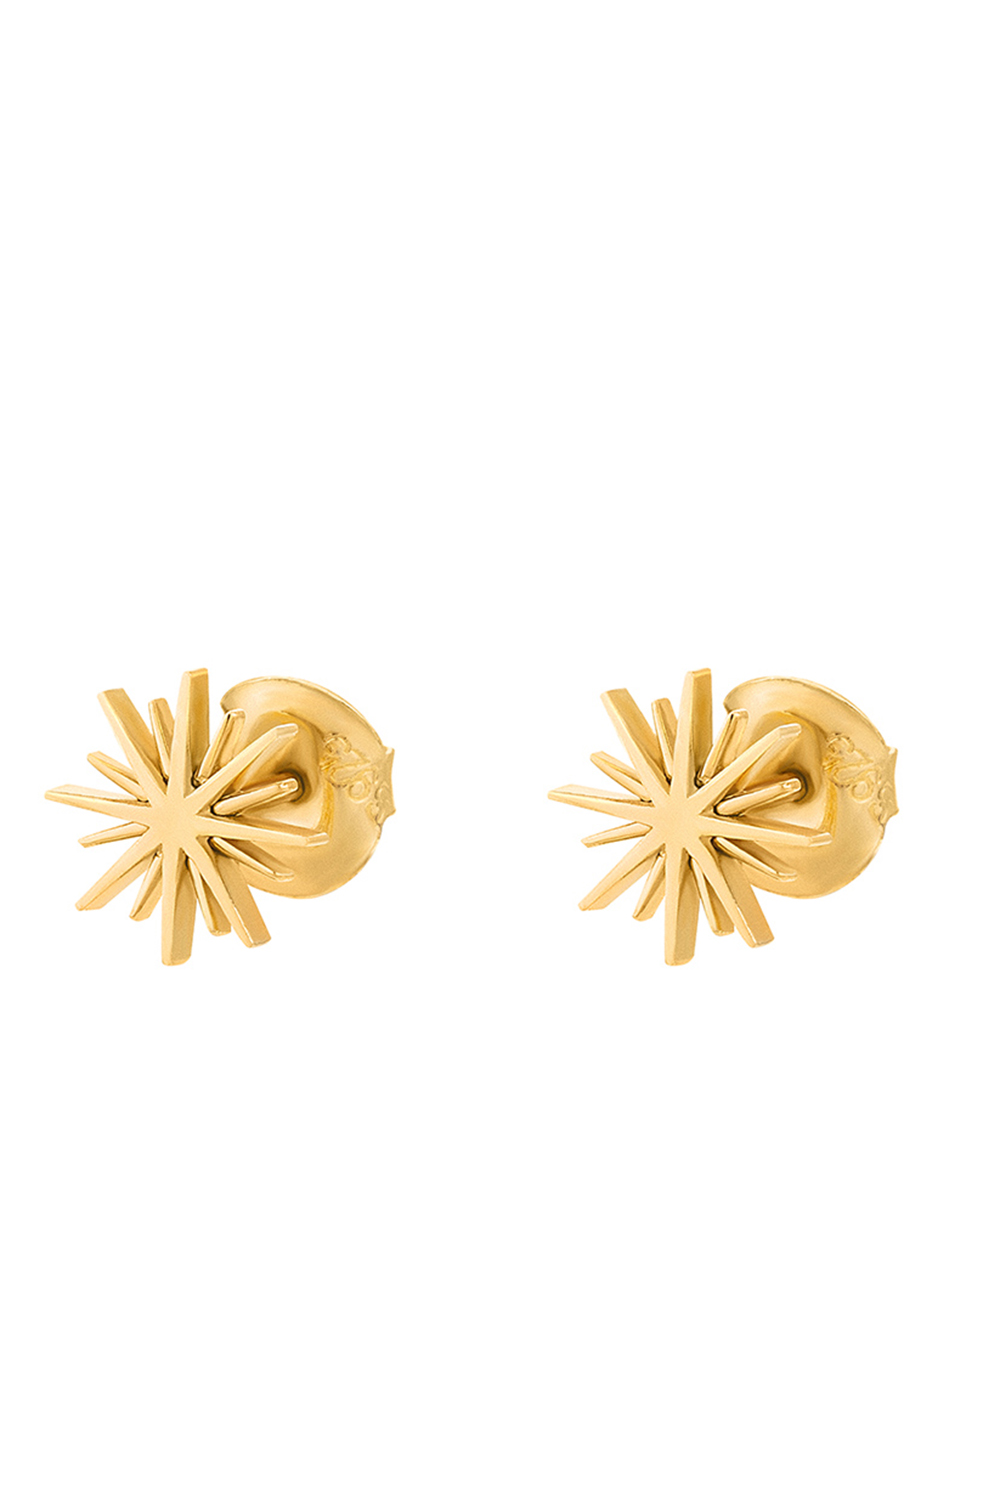 FOLLI FOLLIE – Γυναικεία ασημένια σκουλαρίκια FOLLI FOLLIE WISHING ON χρυσά 1E19S050Y